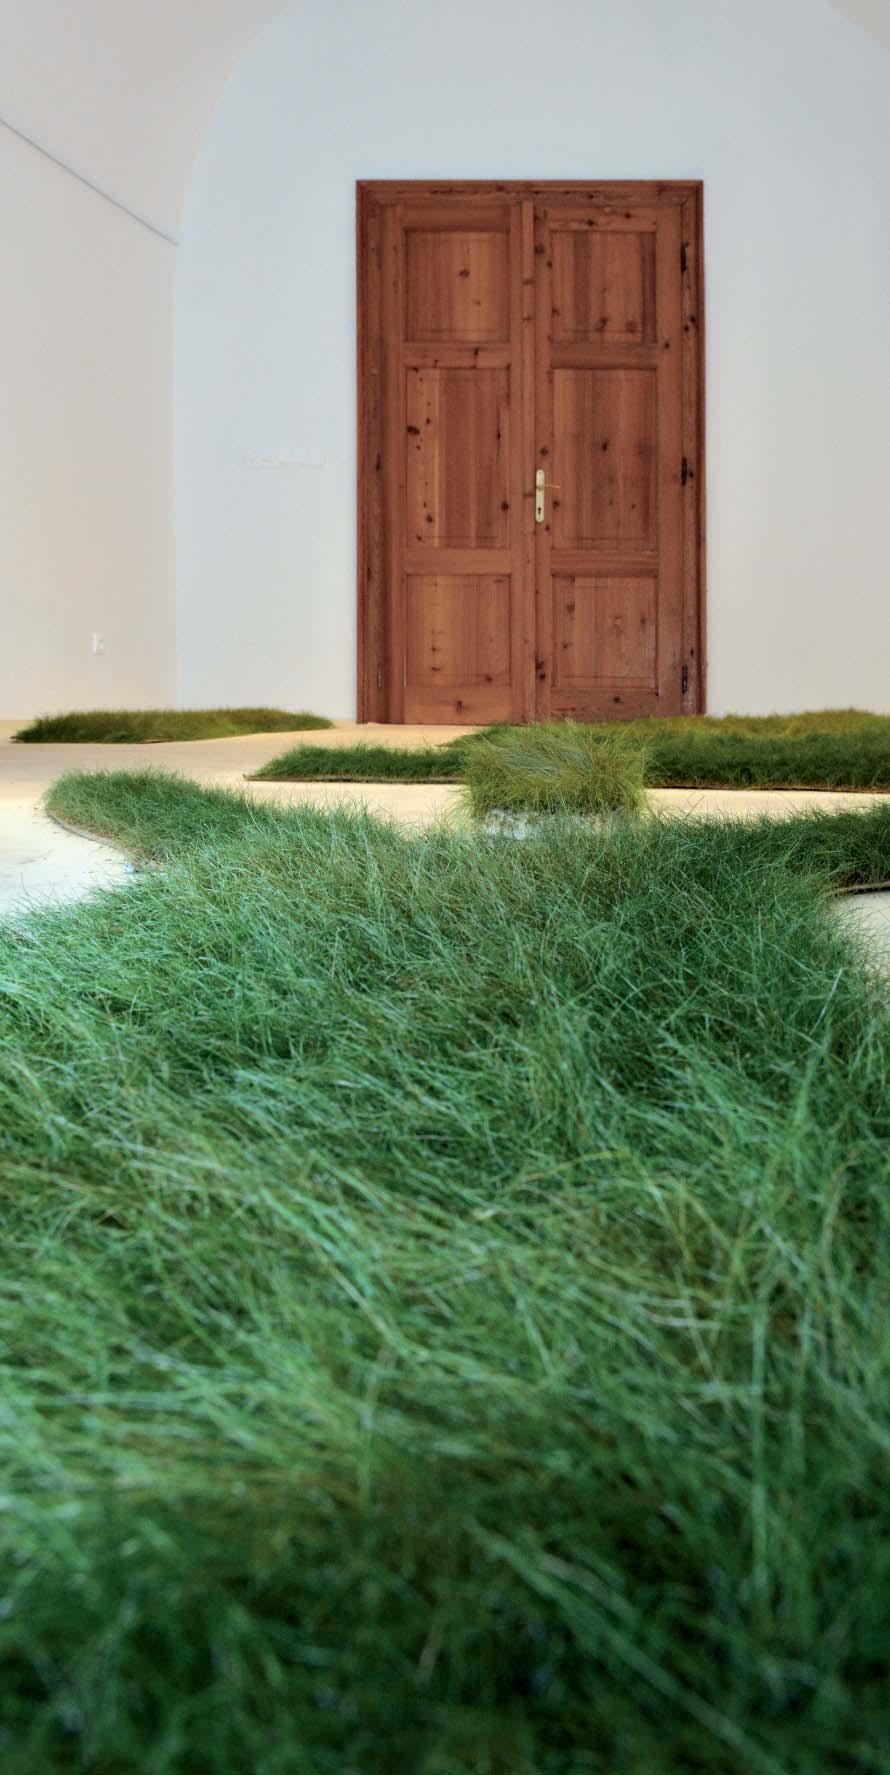 ŽIVÉ ŠATY, 2013, šaty, semená trávy; inštalácia v Turčianskej galérii v Martine 2013 VIVID